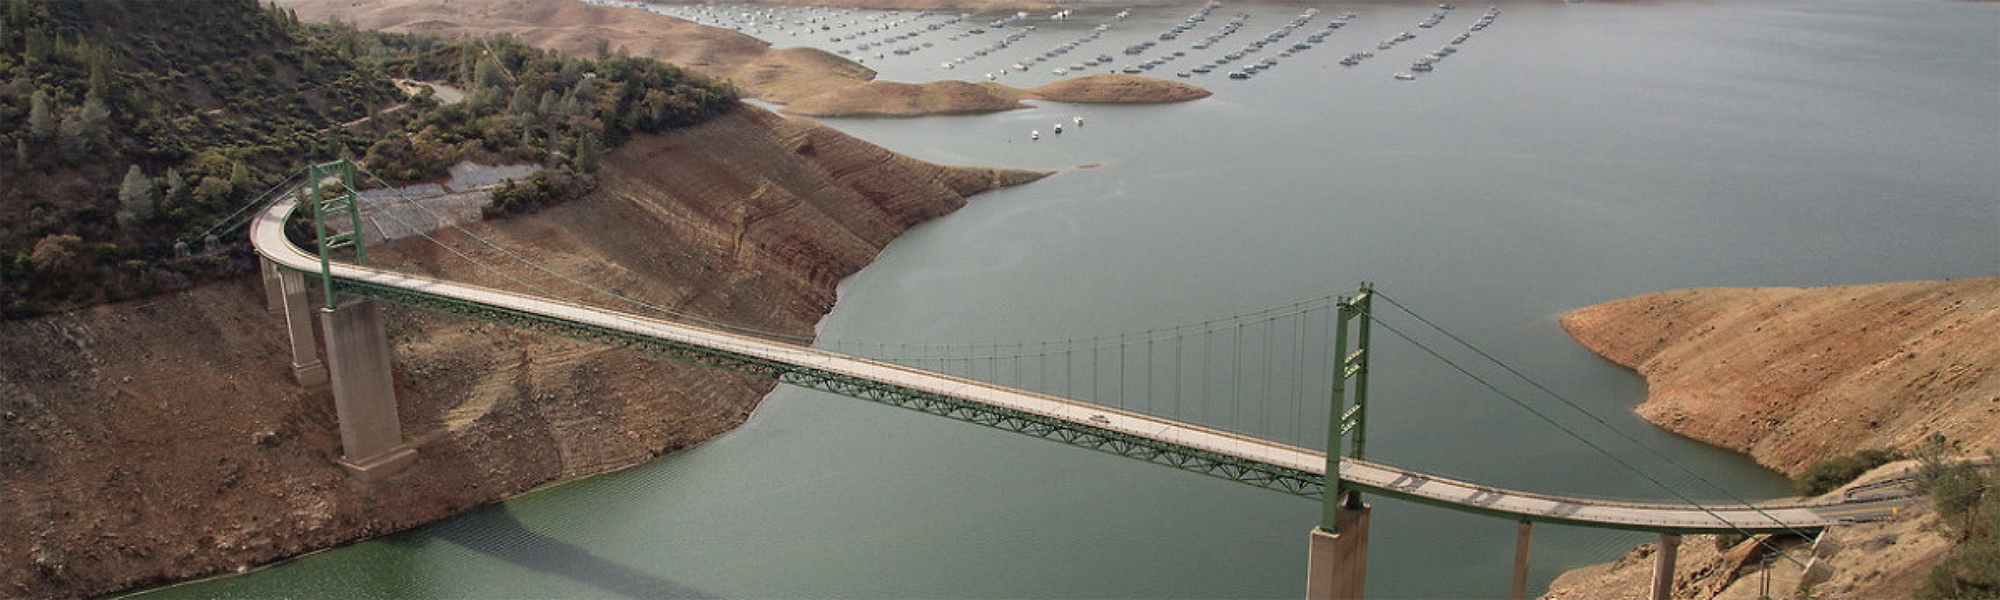 L'usine Ecolab de City of Industry en Californie certifiée leader en gestion responsable des ressources en eau